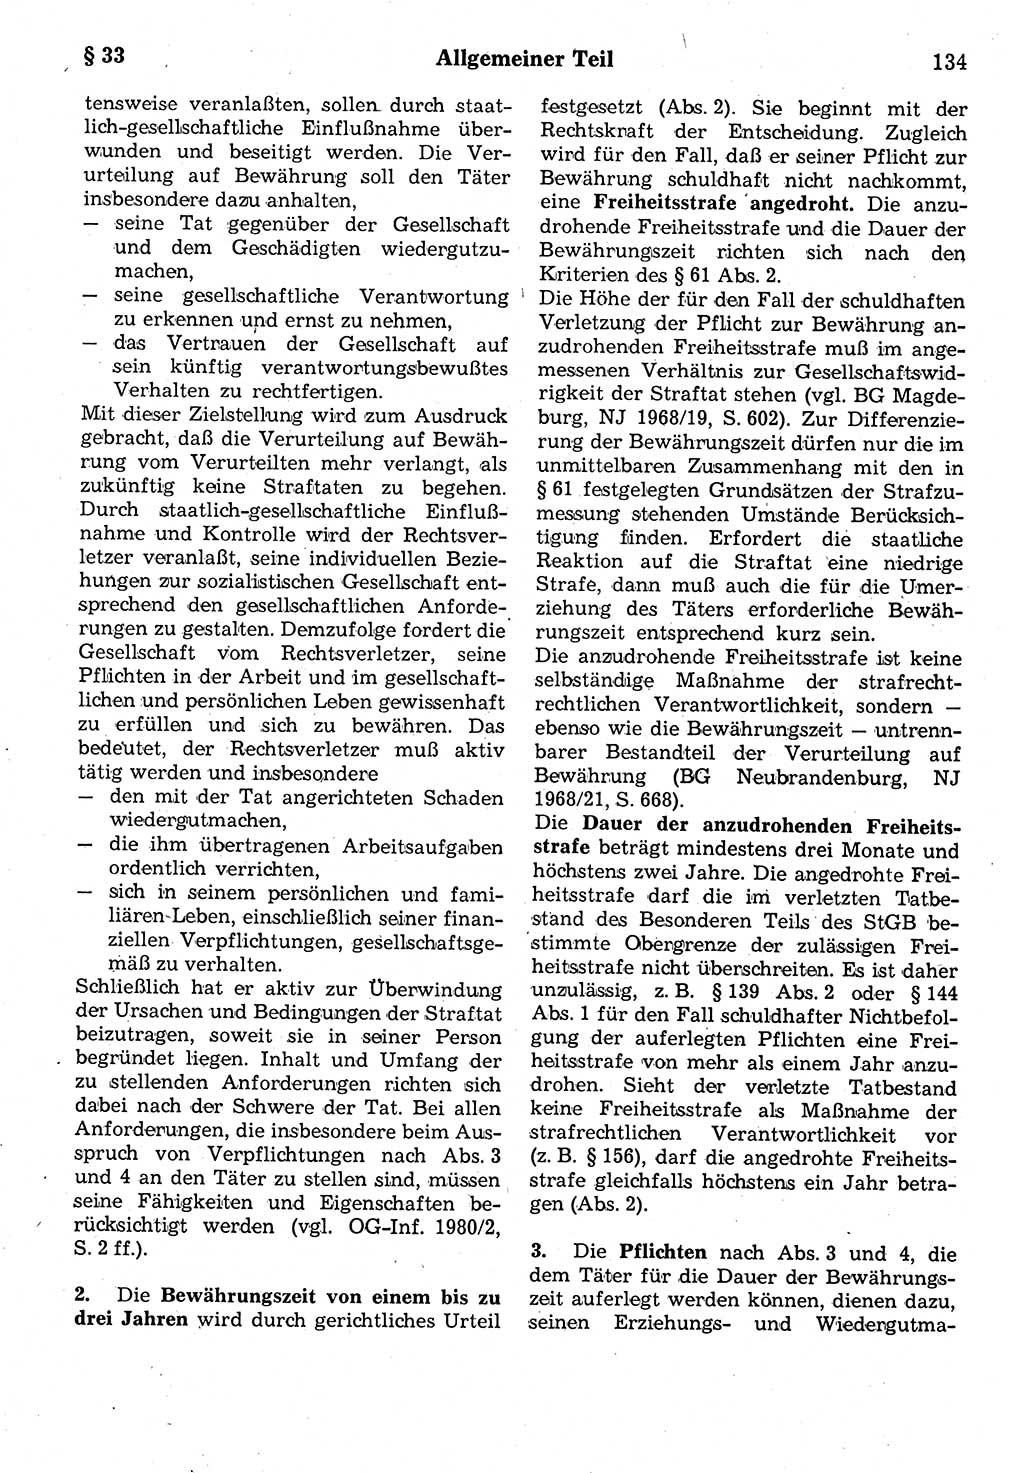 Strafrecht der Deutschen Demokratischen Republik (DDR), Kommentar zum Strafgesetzbuch (StGB) 1987, Seite 134 (Strafr. DDR Komm. StGB 1987, S. 134)